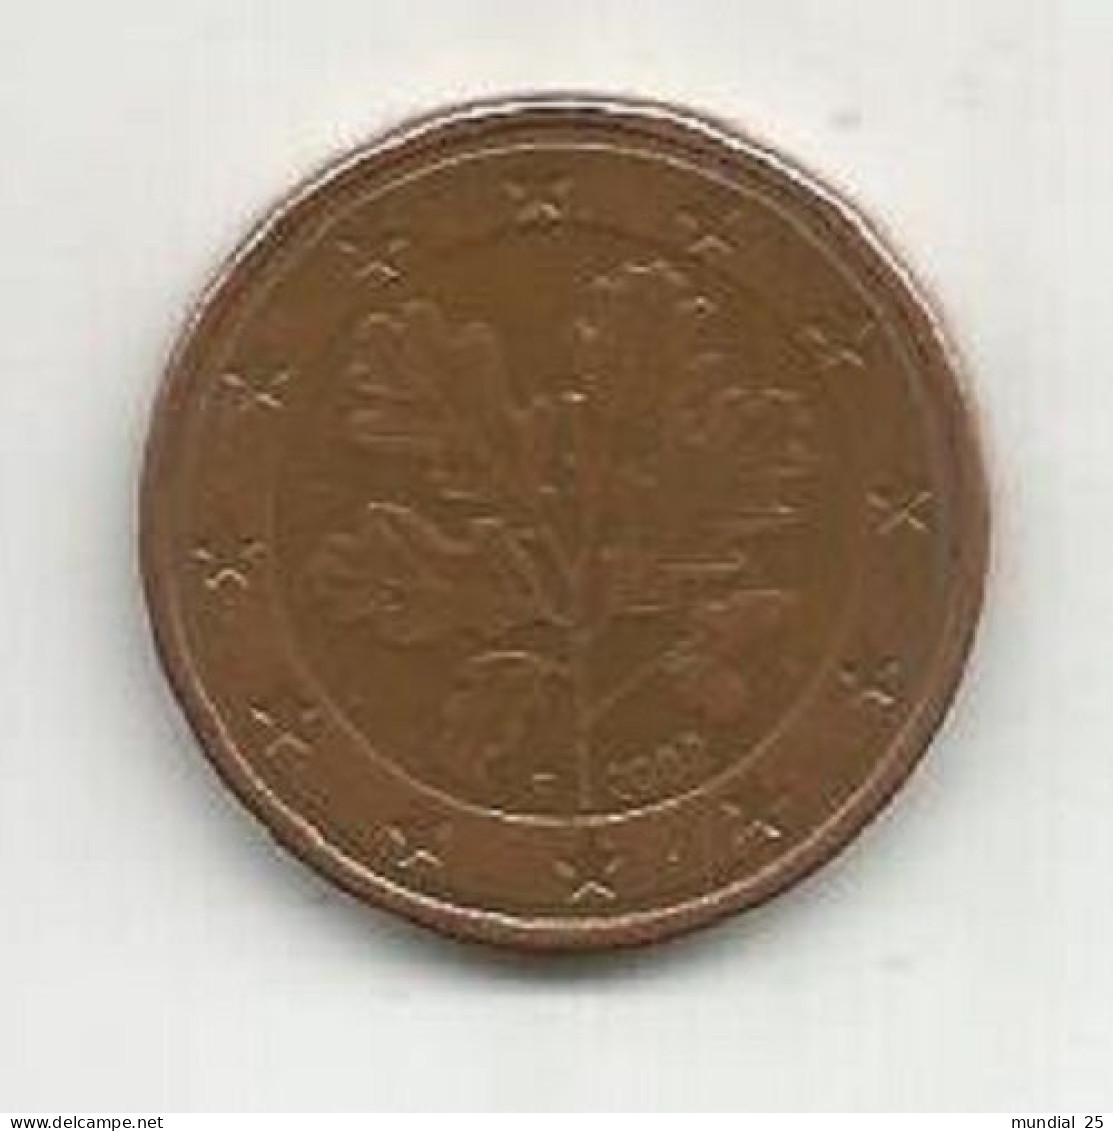 GERMANY 5 EURO CENT 2002 (F) - Deutschland